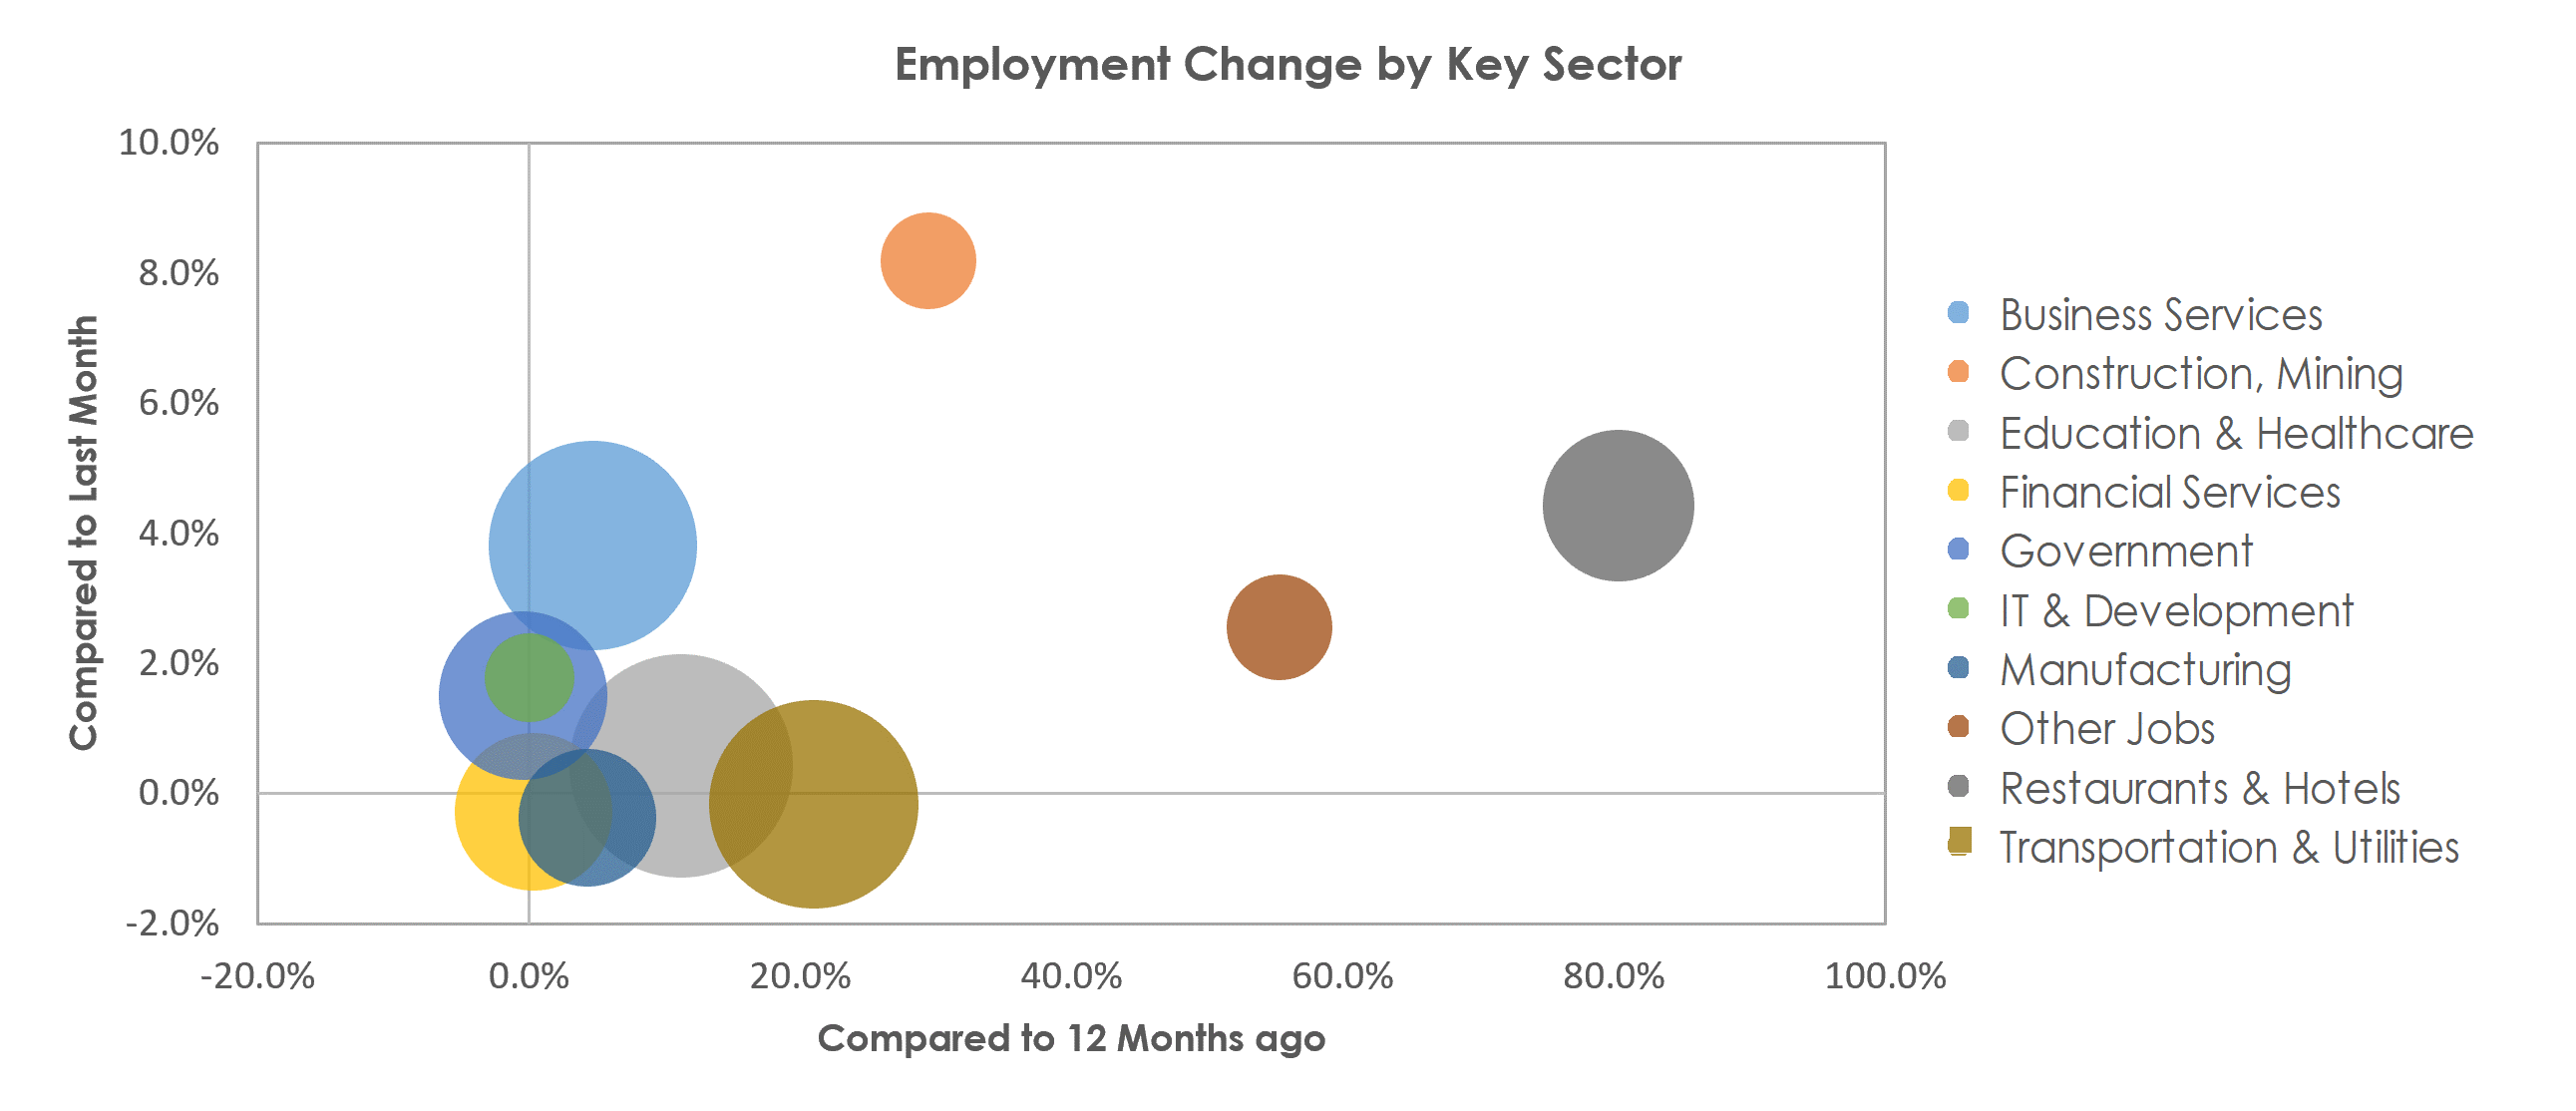 Bridgeport-Stamford-Norwalk, CT Unemployment by Industry April 2021